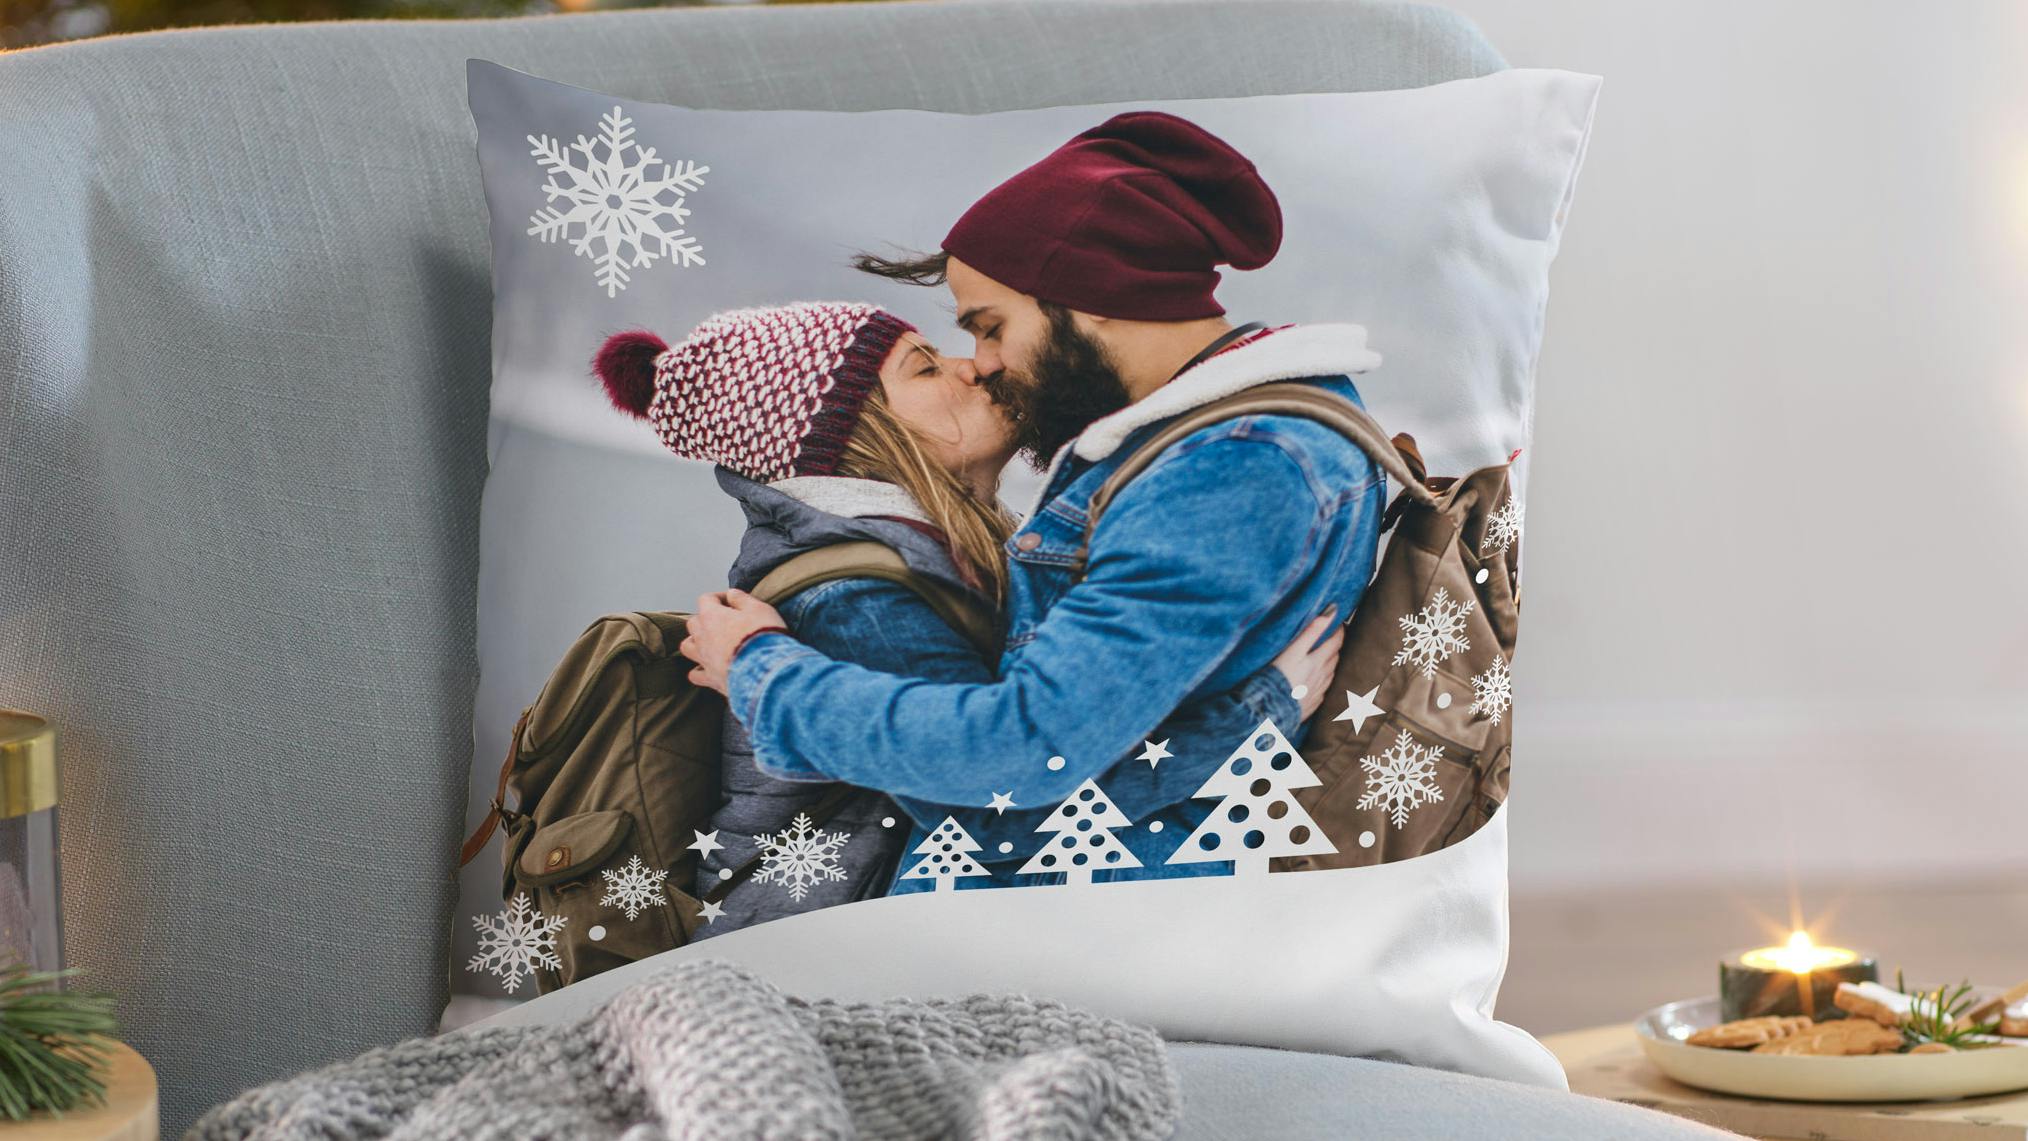 Coussin personnalisé avec une photo d'un couple dans une ambiance de Noël